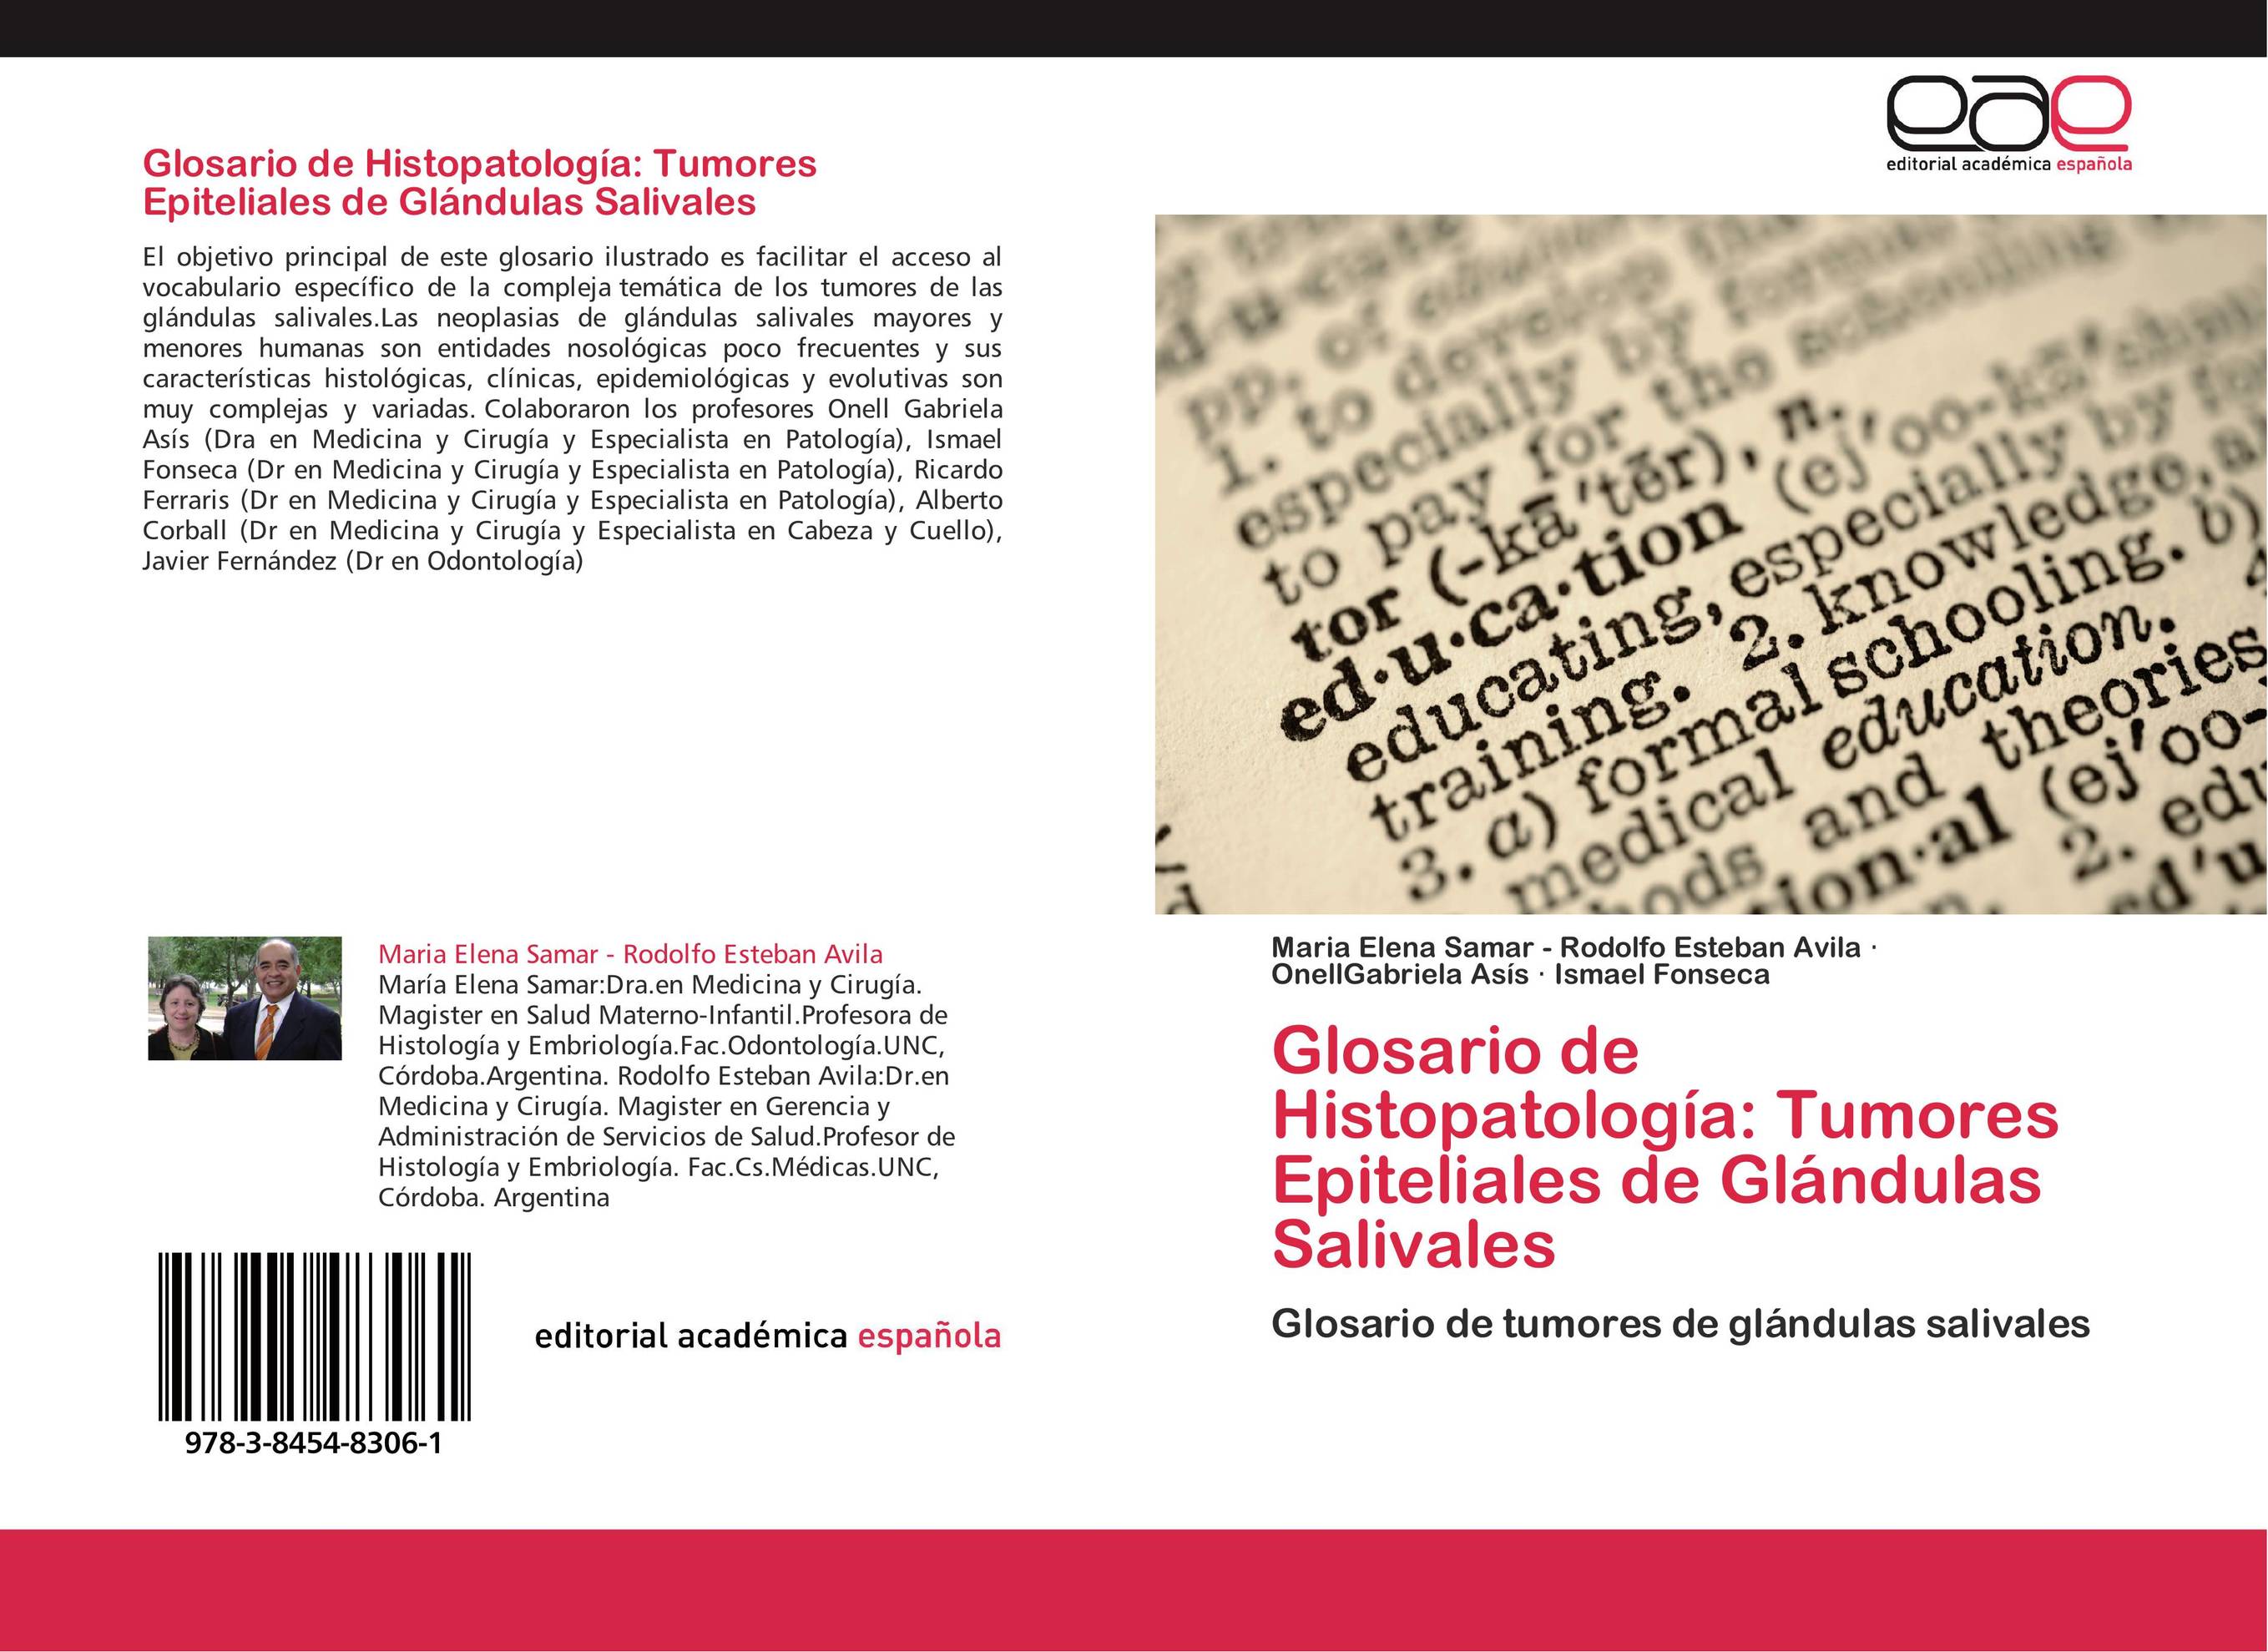 Glosario de Histopatología: Tumores Epiteliales de Glándulas Salivales